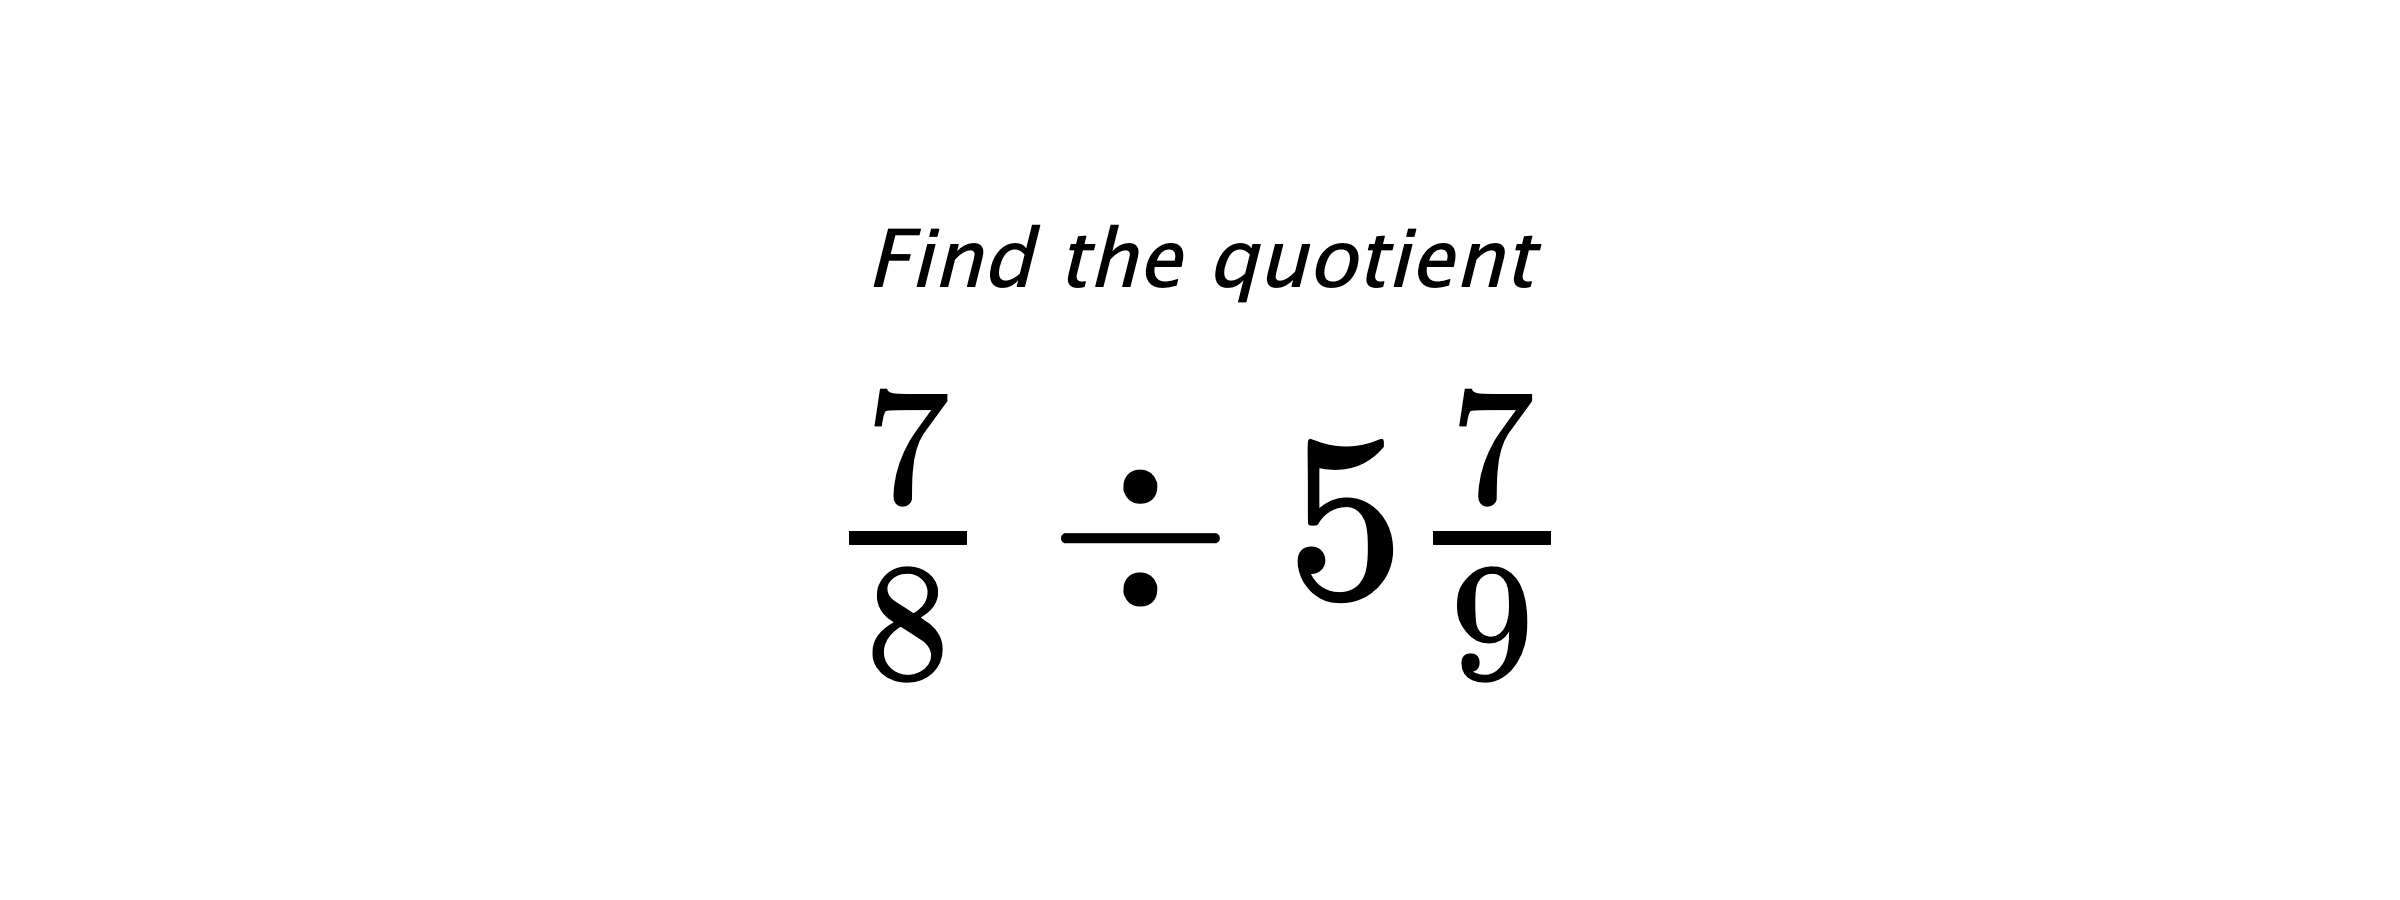 Find the quotient $ \frac{7}{8} \div 5\frac{7}{9} $